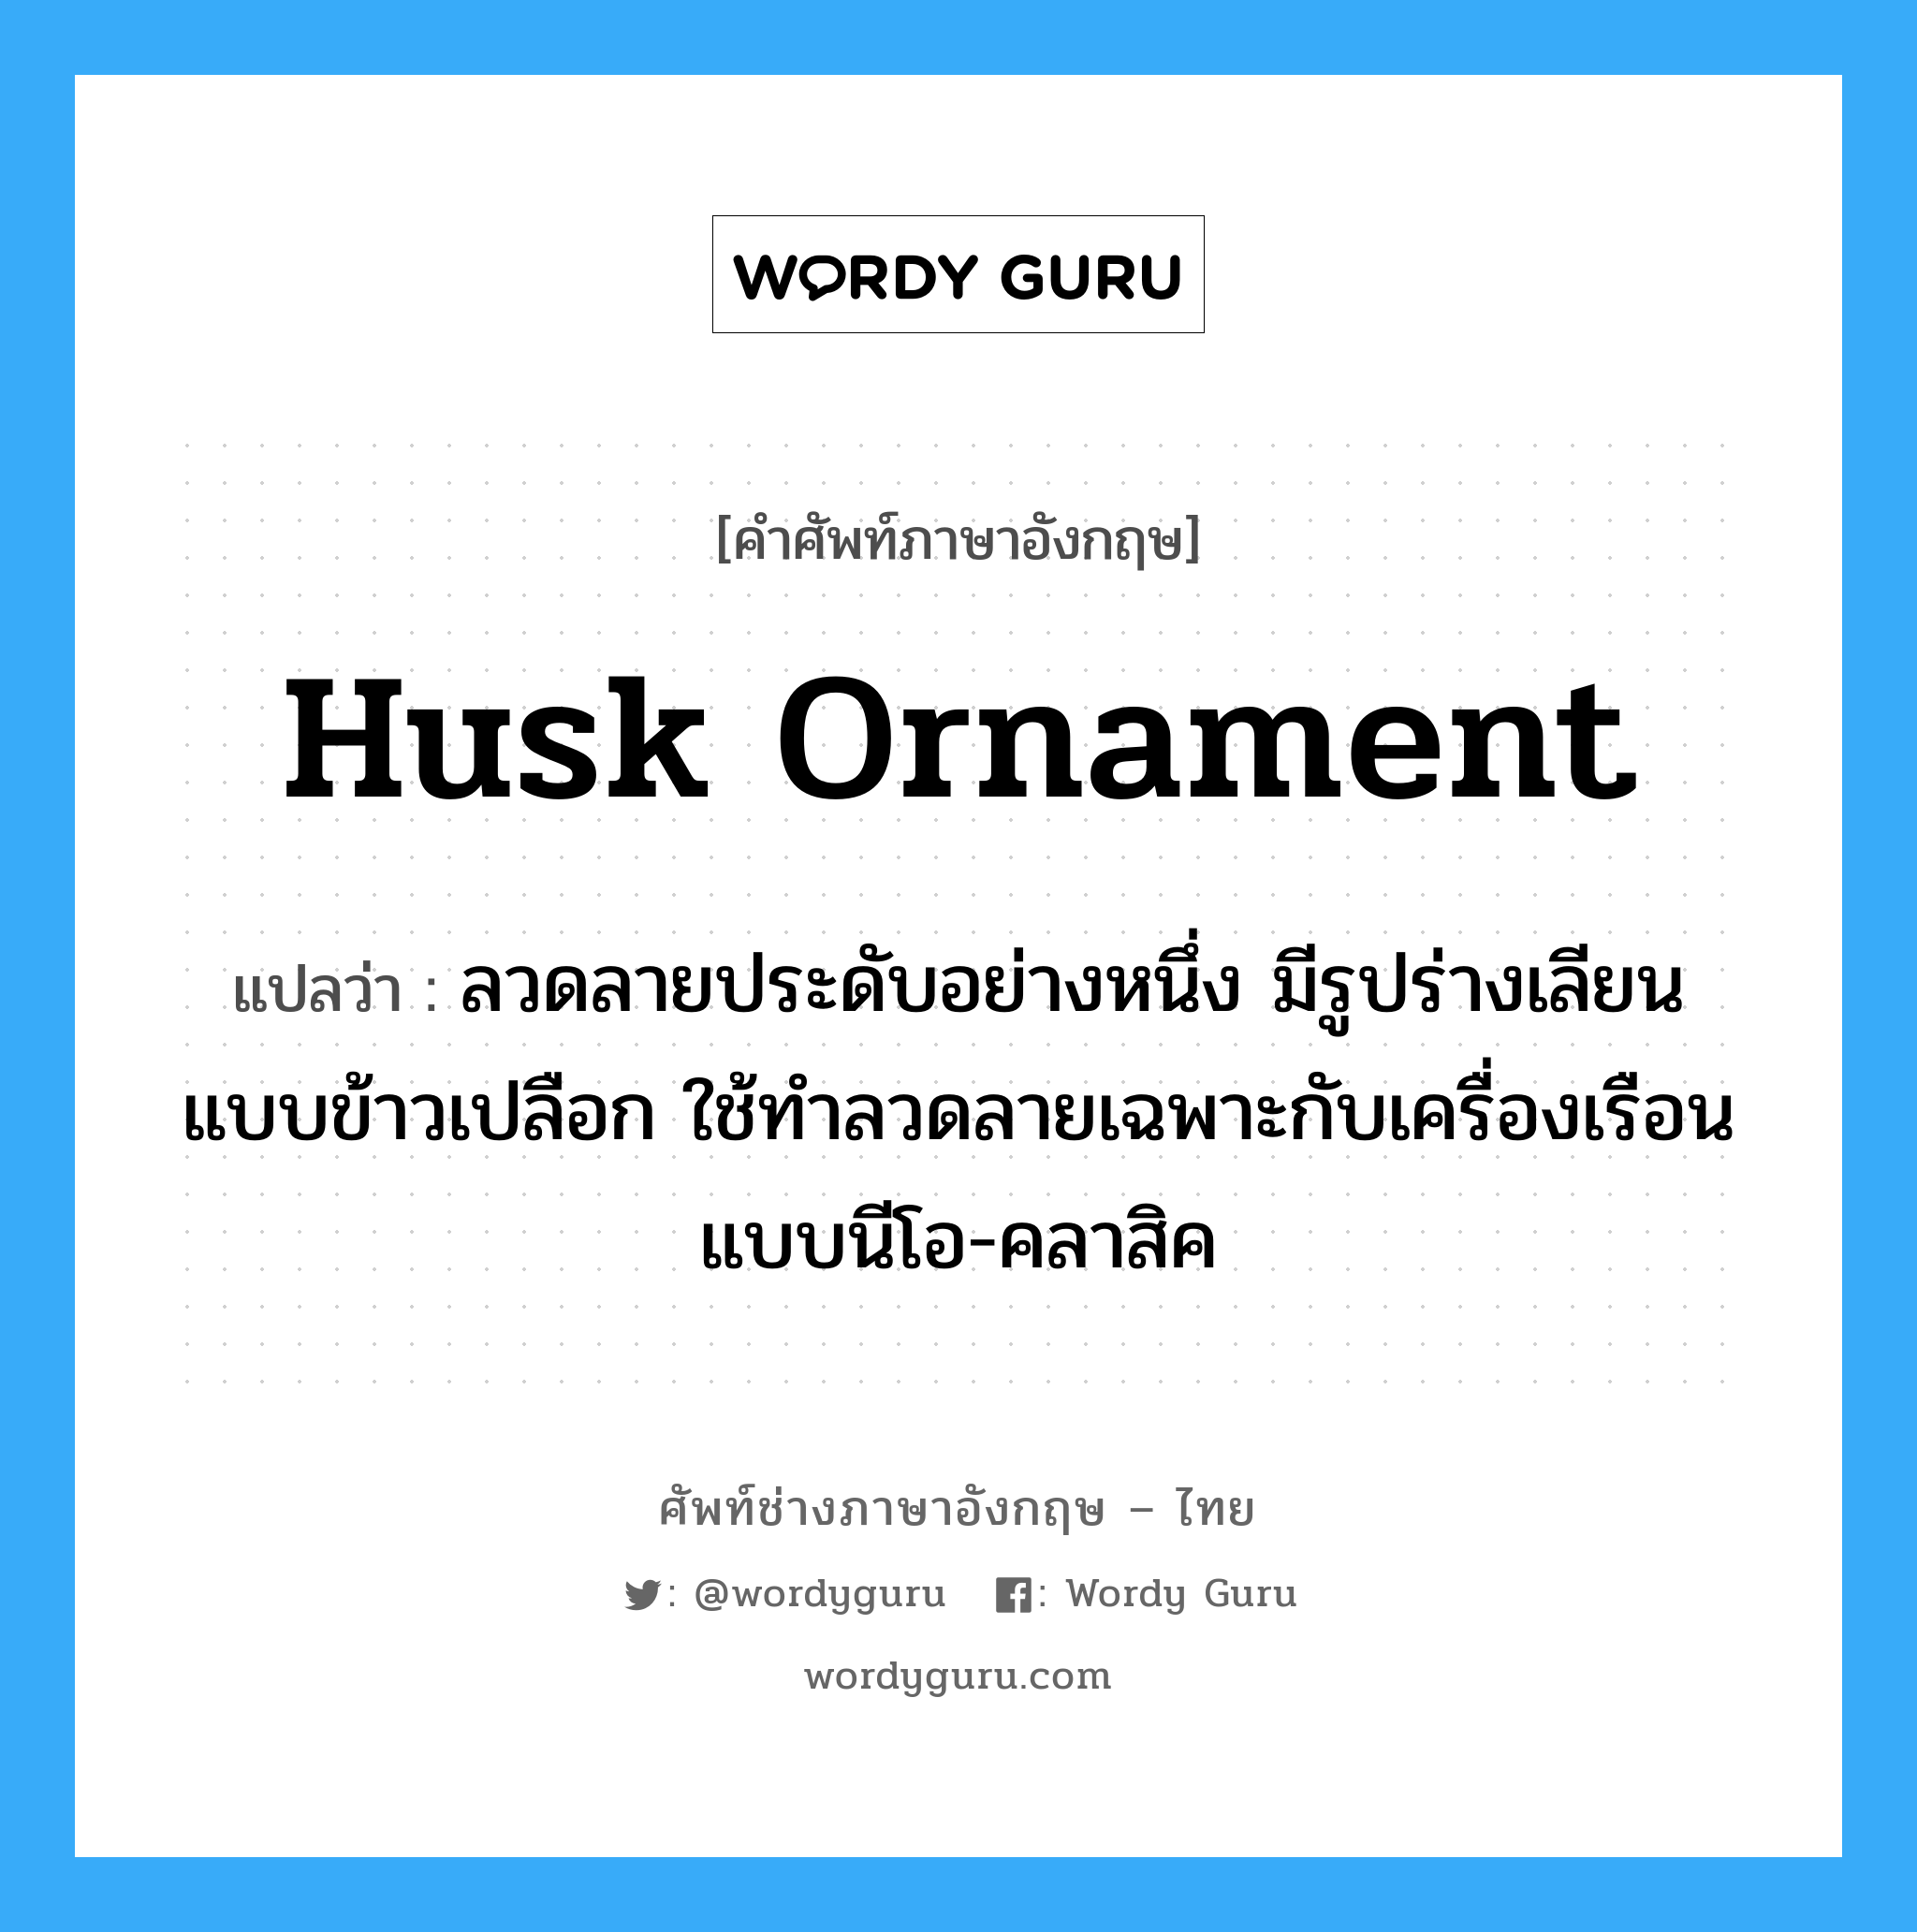 husk ornament แปลว่า?, คำศัพท์ช่างภาษาอังกฤษ - ไทย husk ornament คำศัพท์ภาษาอังกฤษ husk ornament แปลว่า ลวดลายประดับอย่างหนึ่ง มีรูปร่างเลียนแบบข้าวเปลือก ใช้ทำลวดลายเฉพาะกับเครื่องเรือนแบบนีโอ-คลาสิค